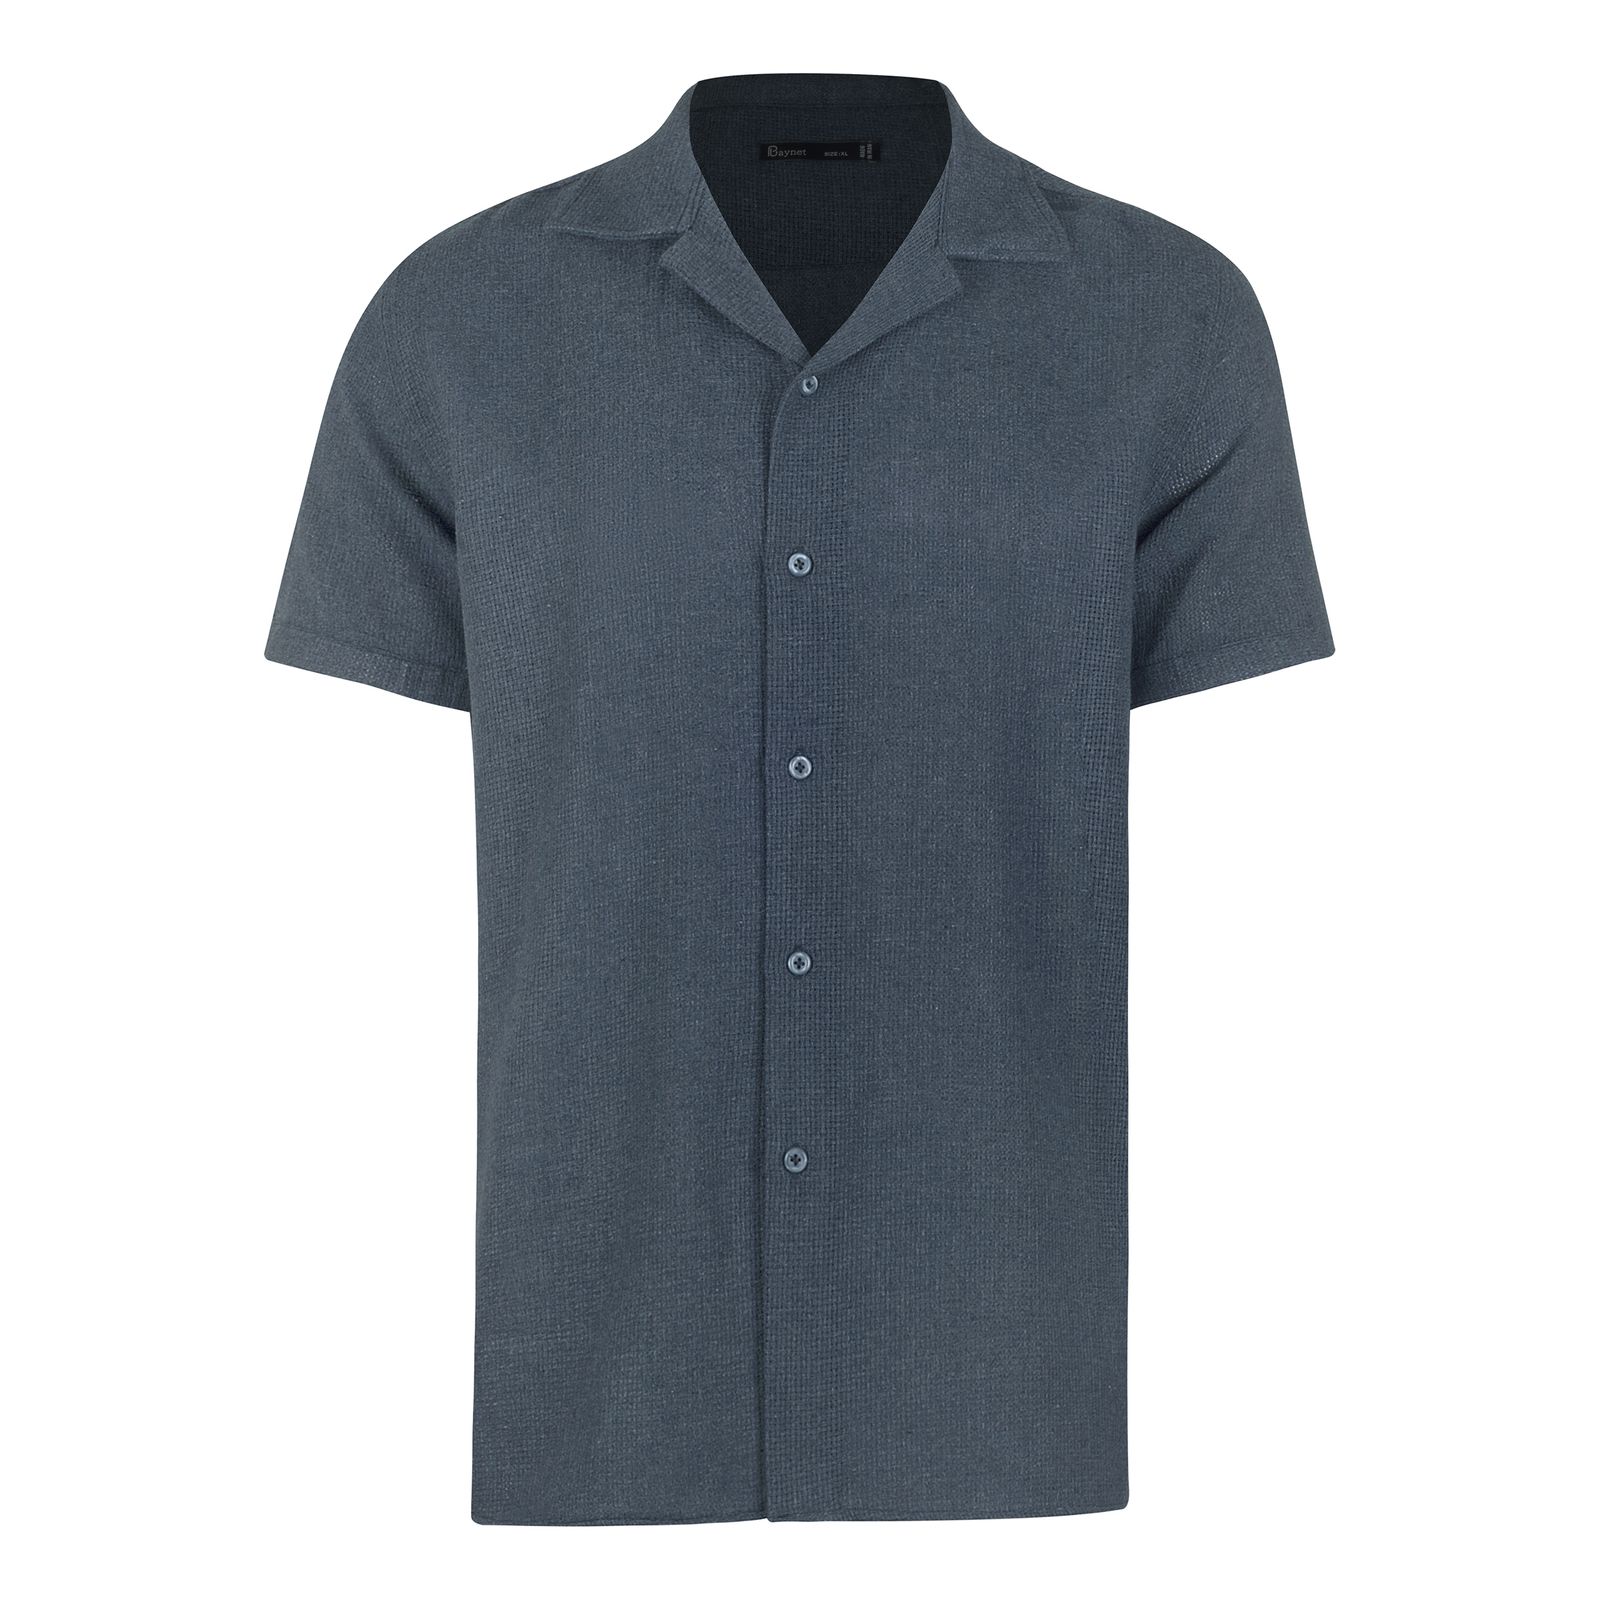 پیراهن آستین کوتاه مردانه باینت مدل 772-5 رنگ آبی -  - 2